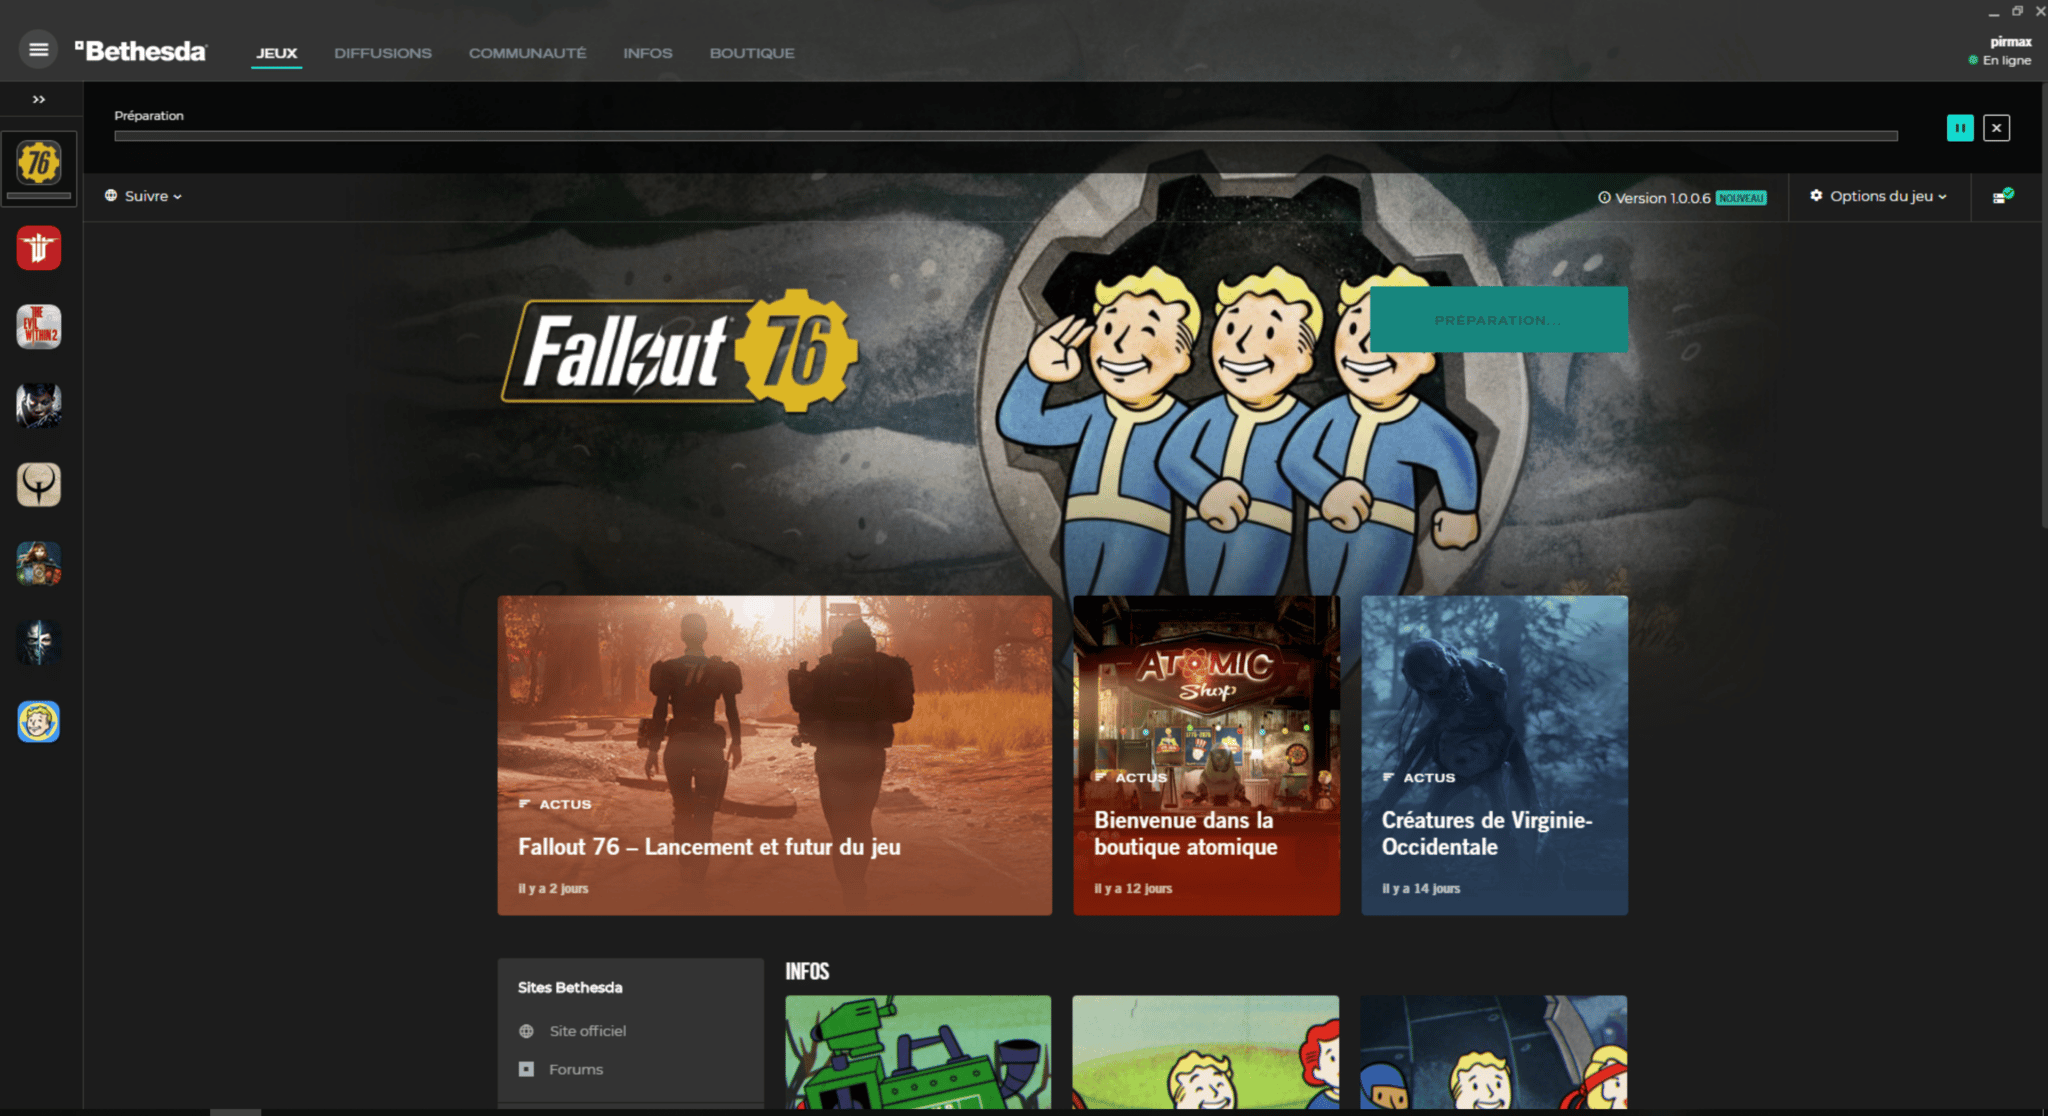 Bon plan : Fallout 76 sort aujourd’hui, achetez-le à 35€